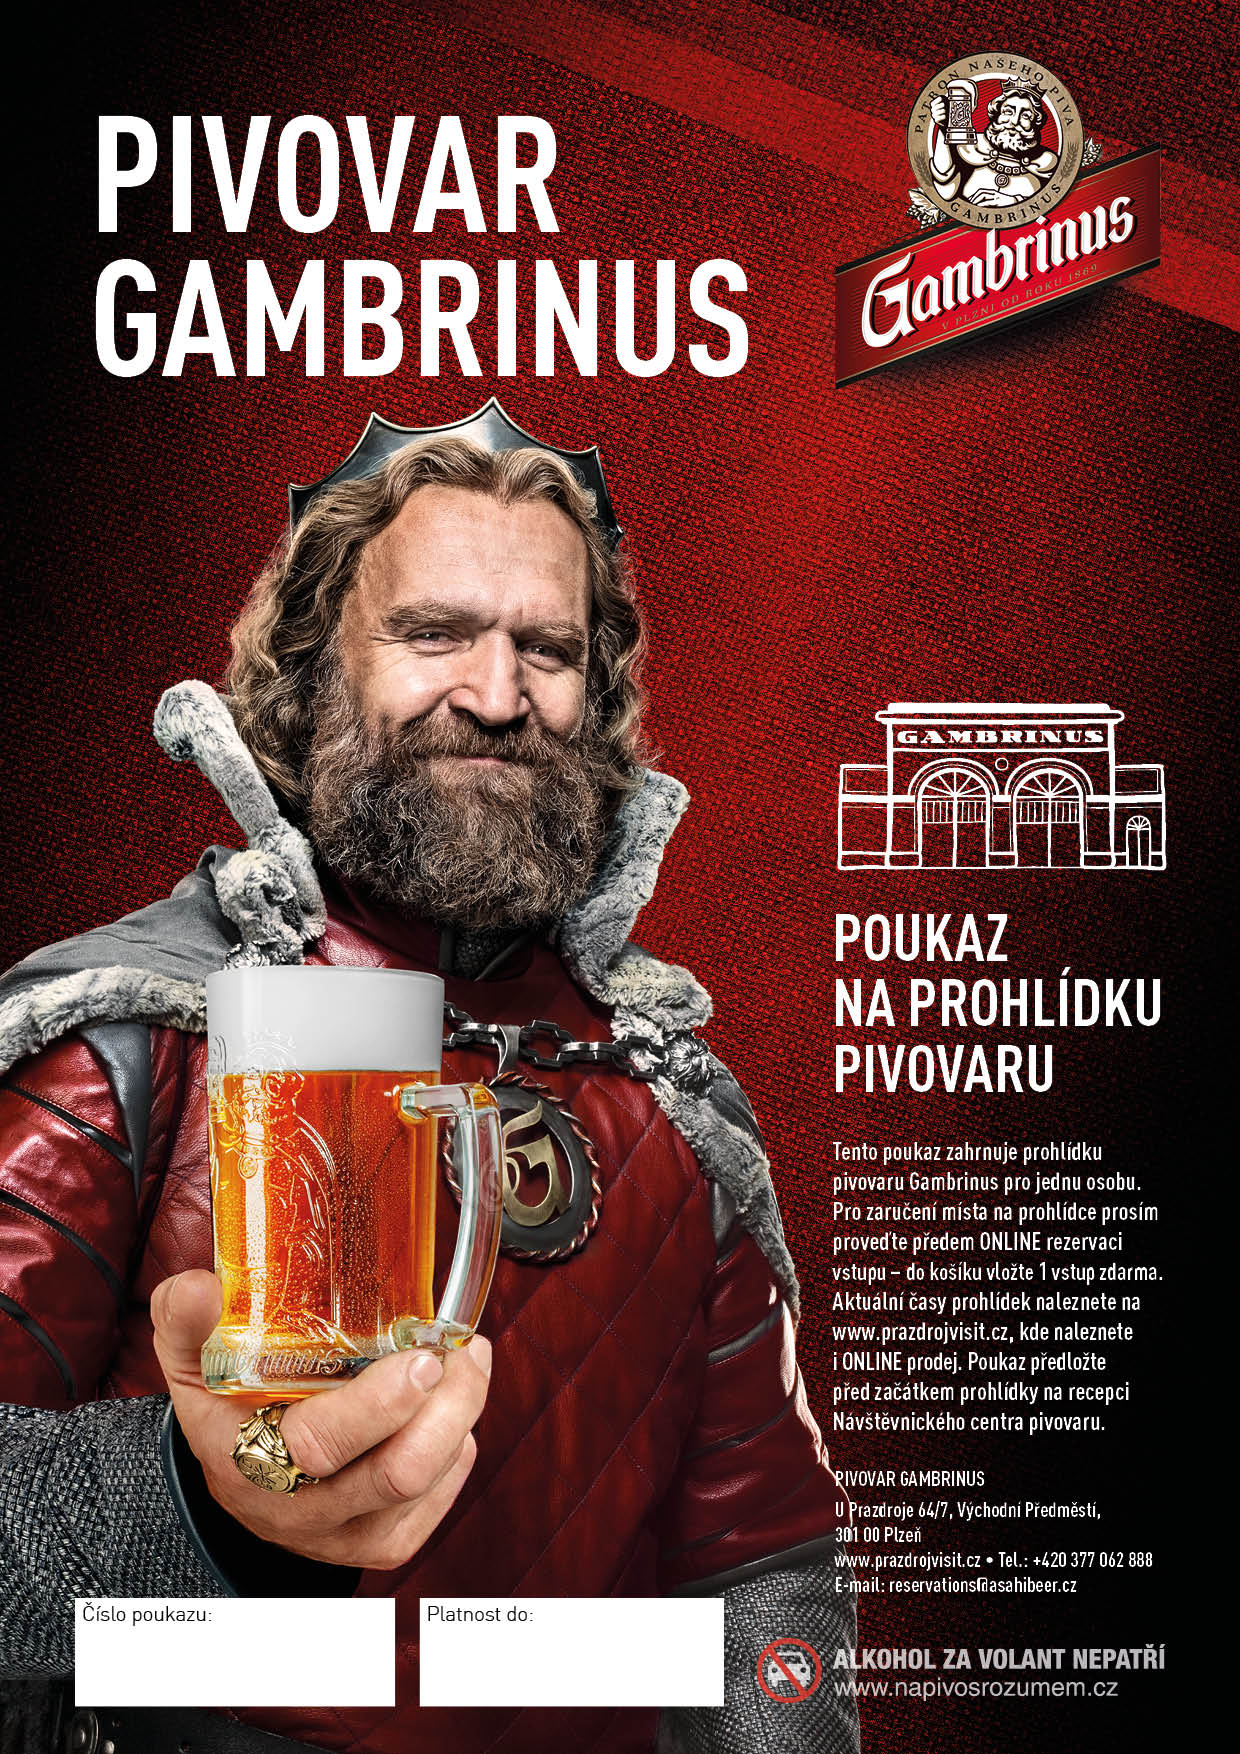 Prohlídka pivovaru Gambrinus - český jazyk